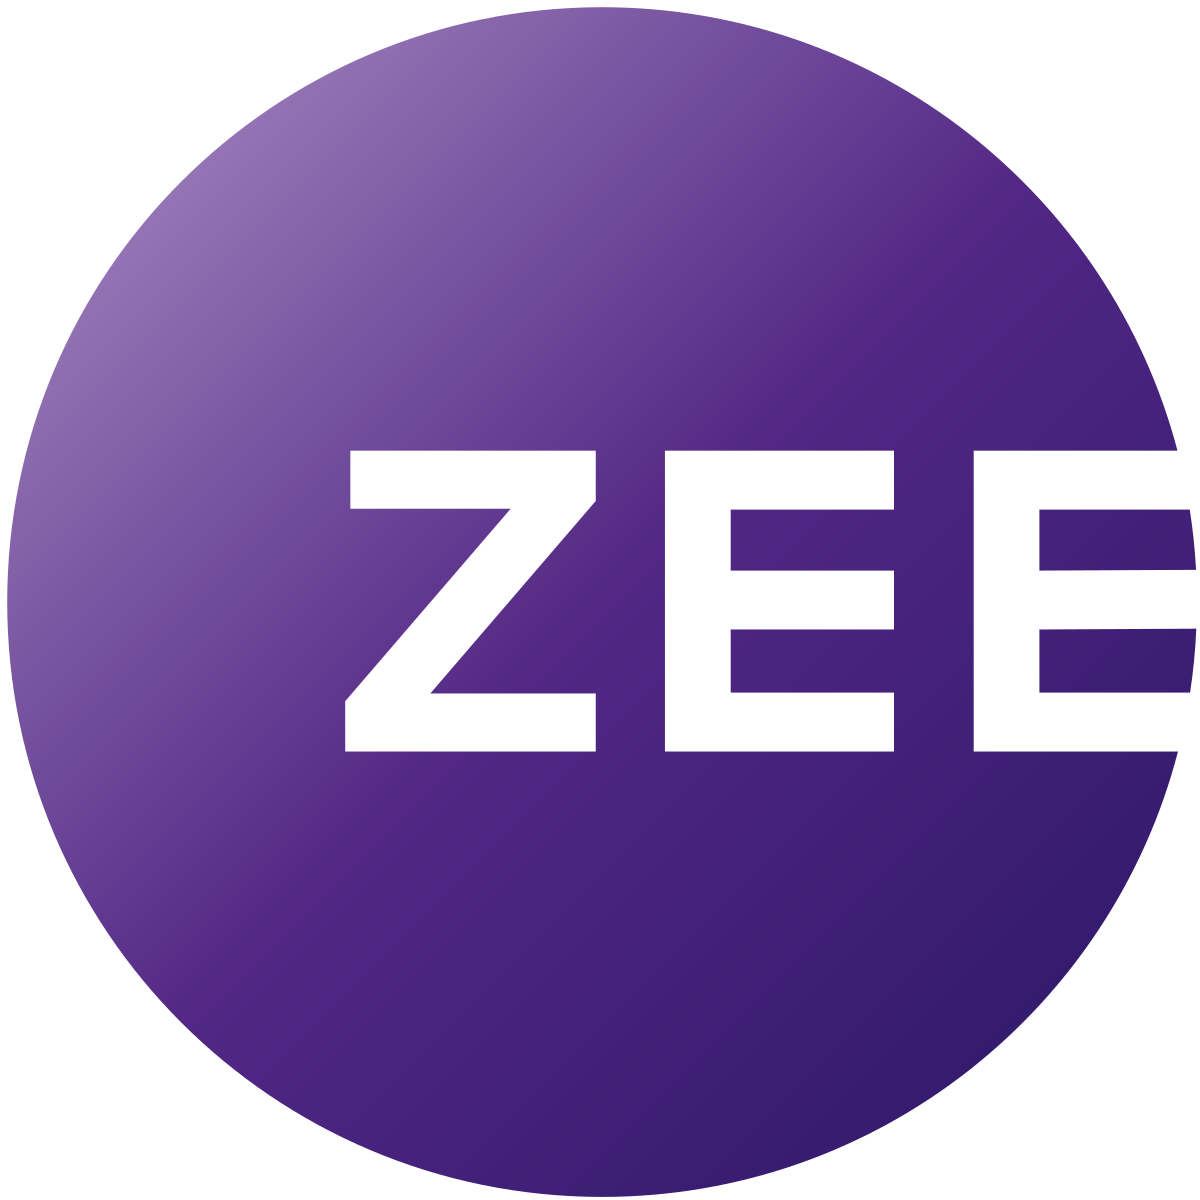 Zee_entertainment_enterprises_logo.svg